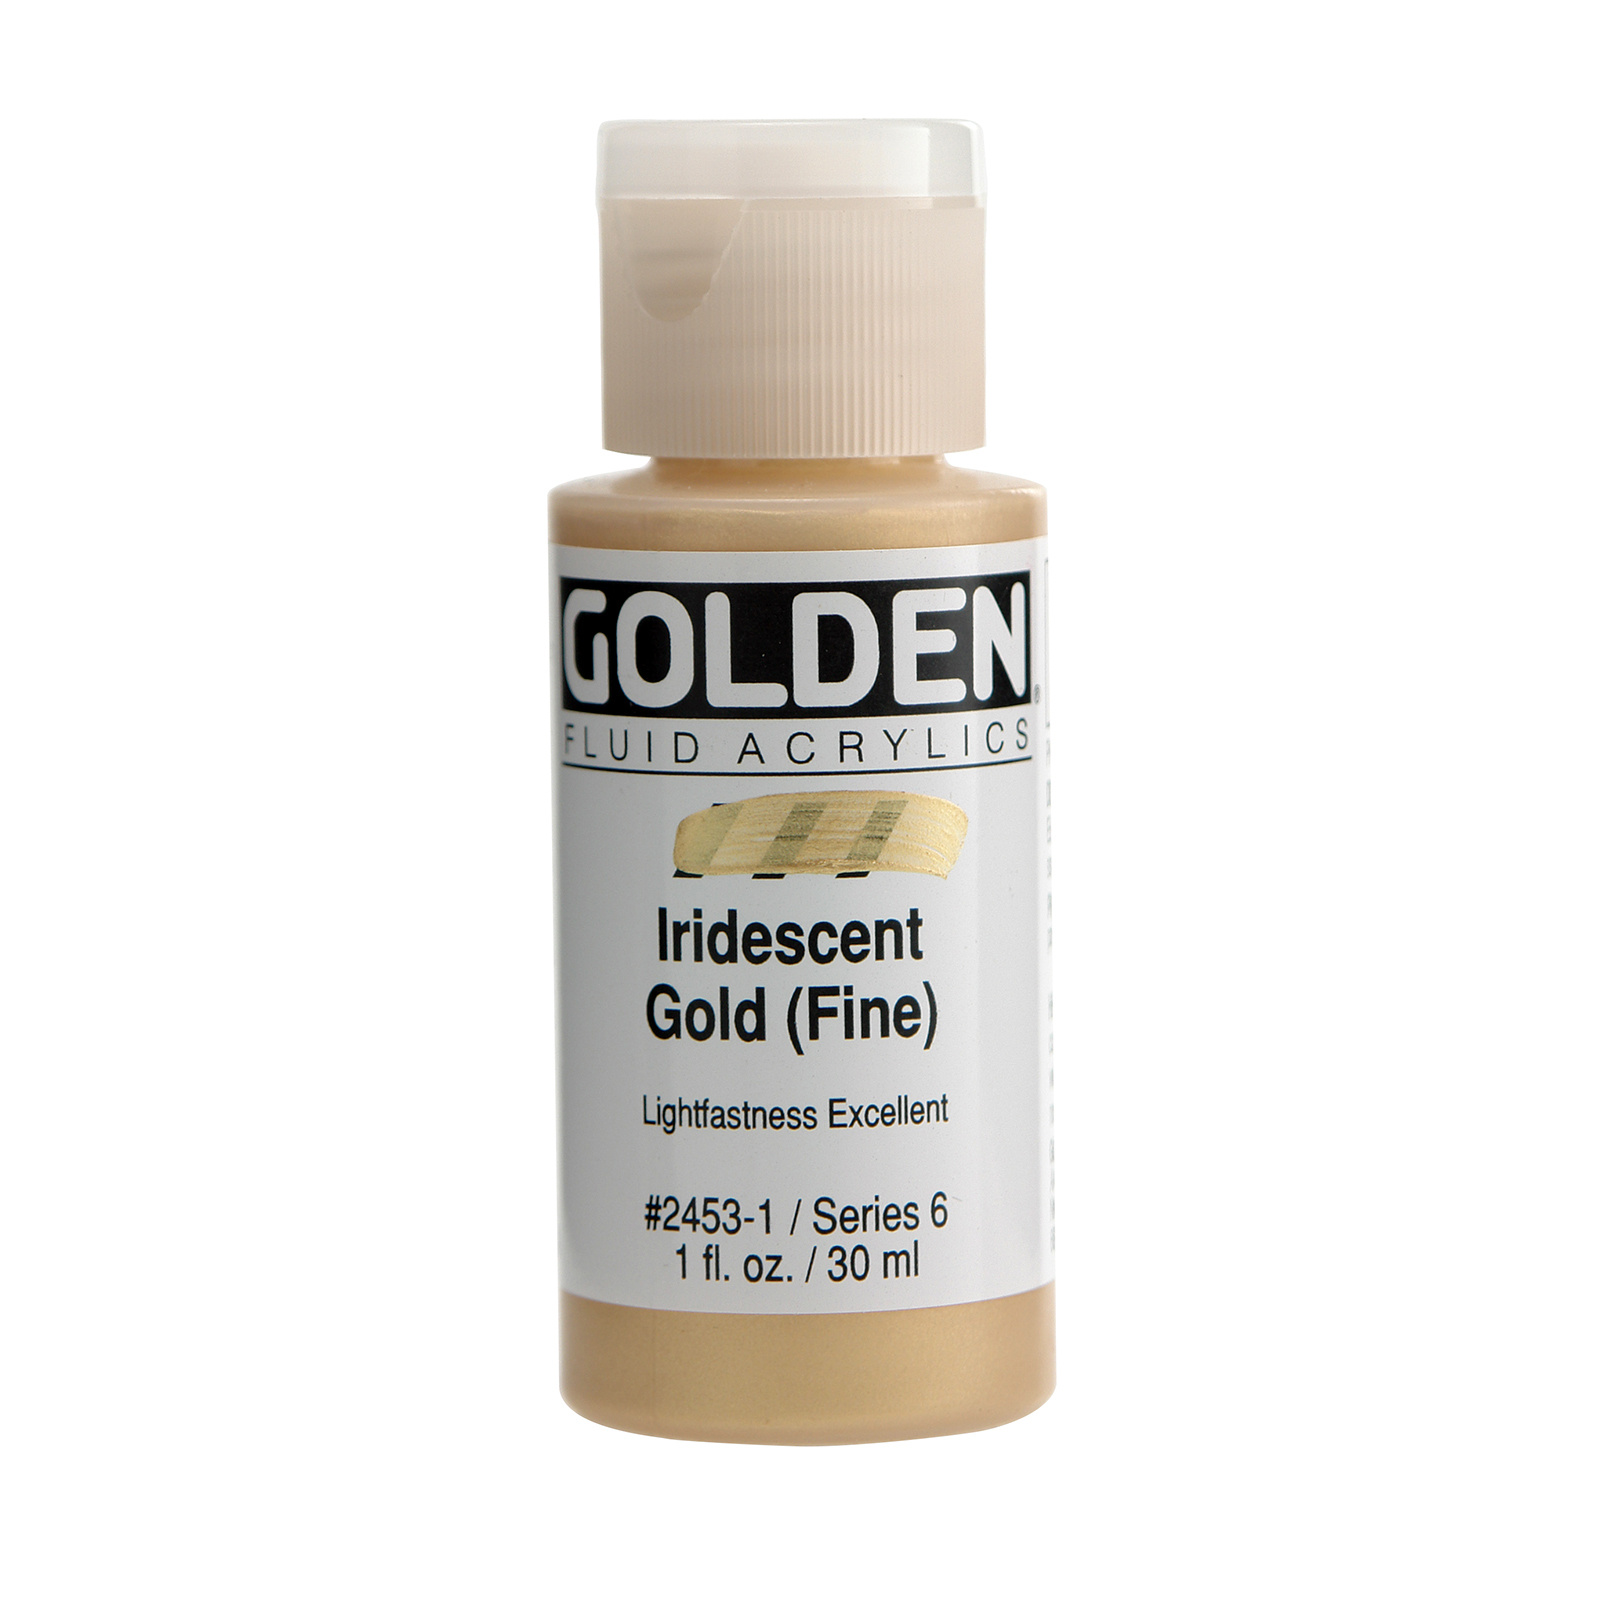 Golden Iridescent Fluid Acrylics, 1 oz., Iridescent Gold